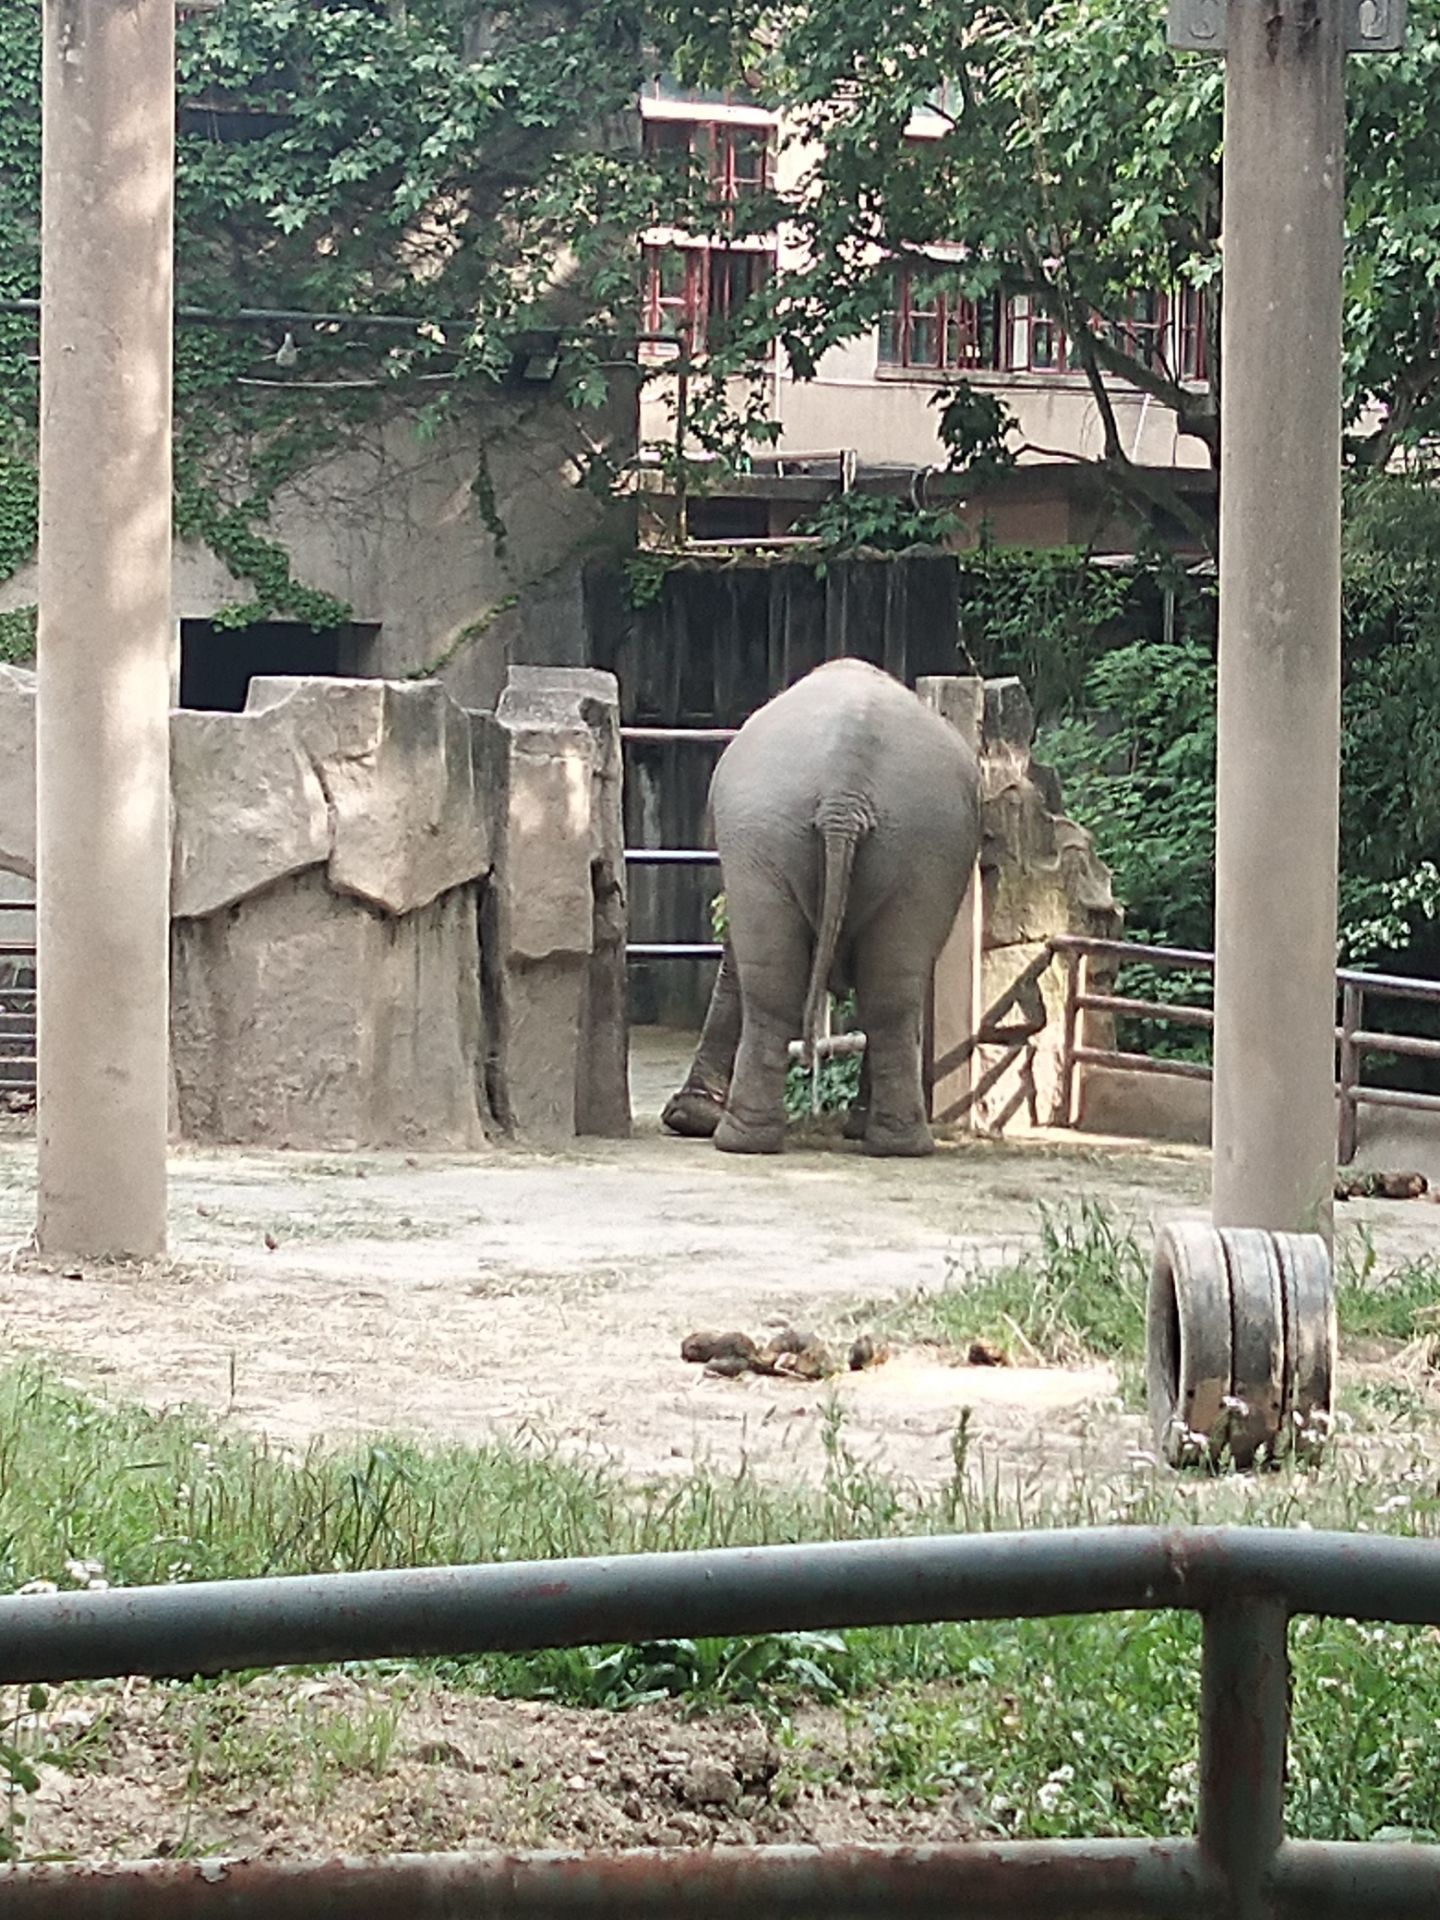 寻找与发现之旅@上海野生动物园 - 上海游记攻略【携程攻略】